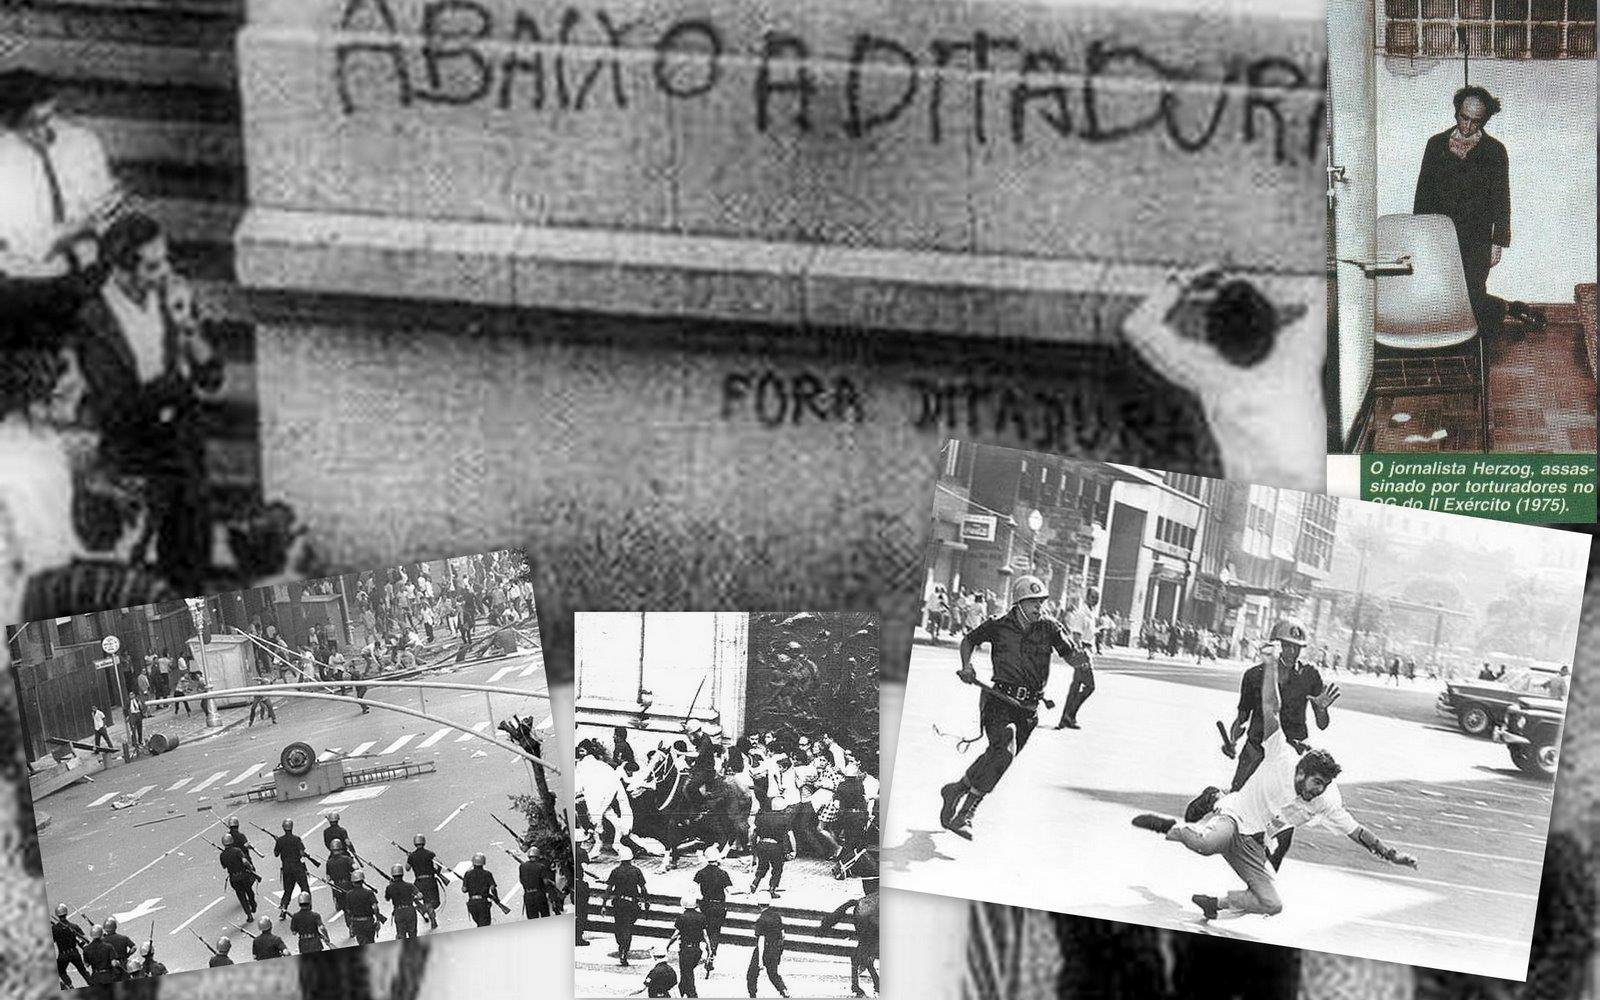 Fim dos anos anos 70 e início dos anos 80: Crise do regime ditatorial, crescimento dos movimentos populares